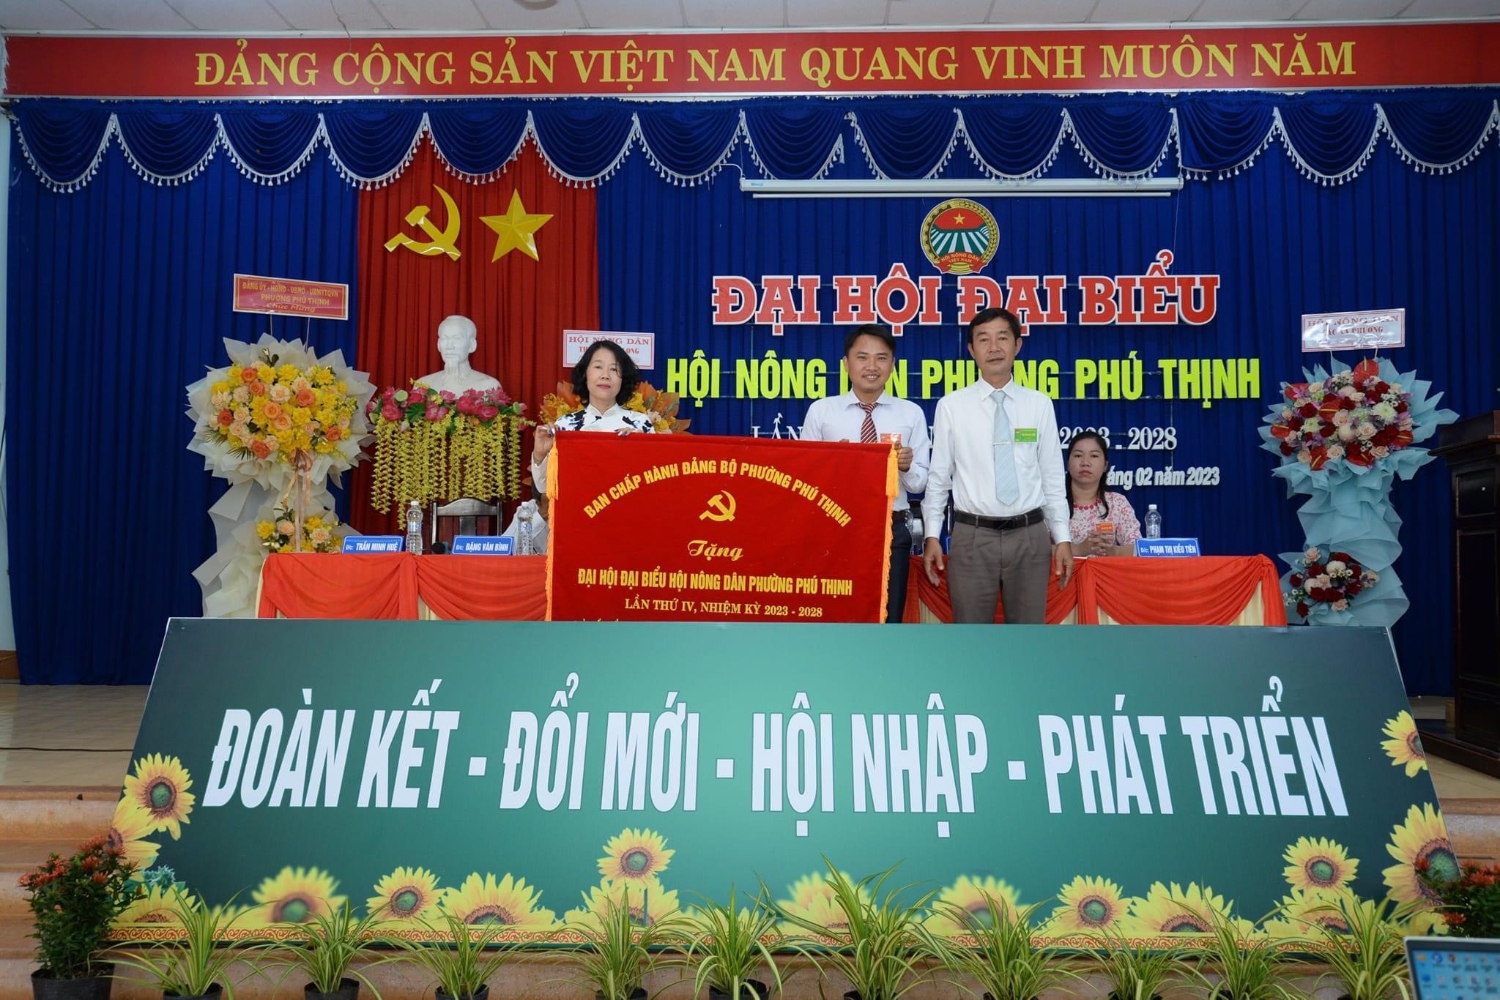 Đồng chí Phạm Ngọc Thành - Bí Thư Đảng ủy tặng bức trướng cho Đại hội